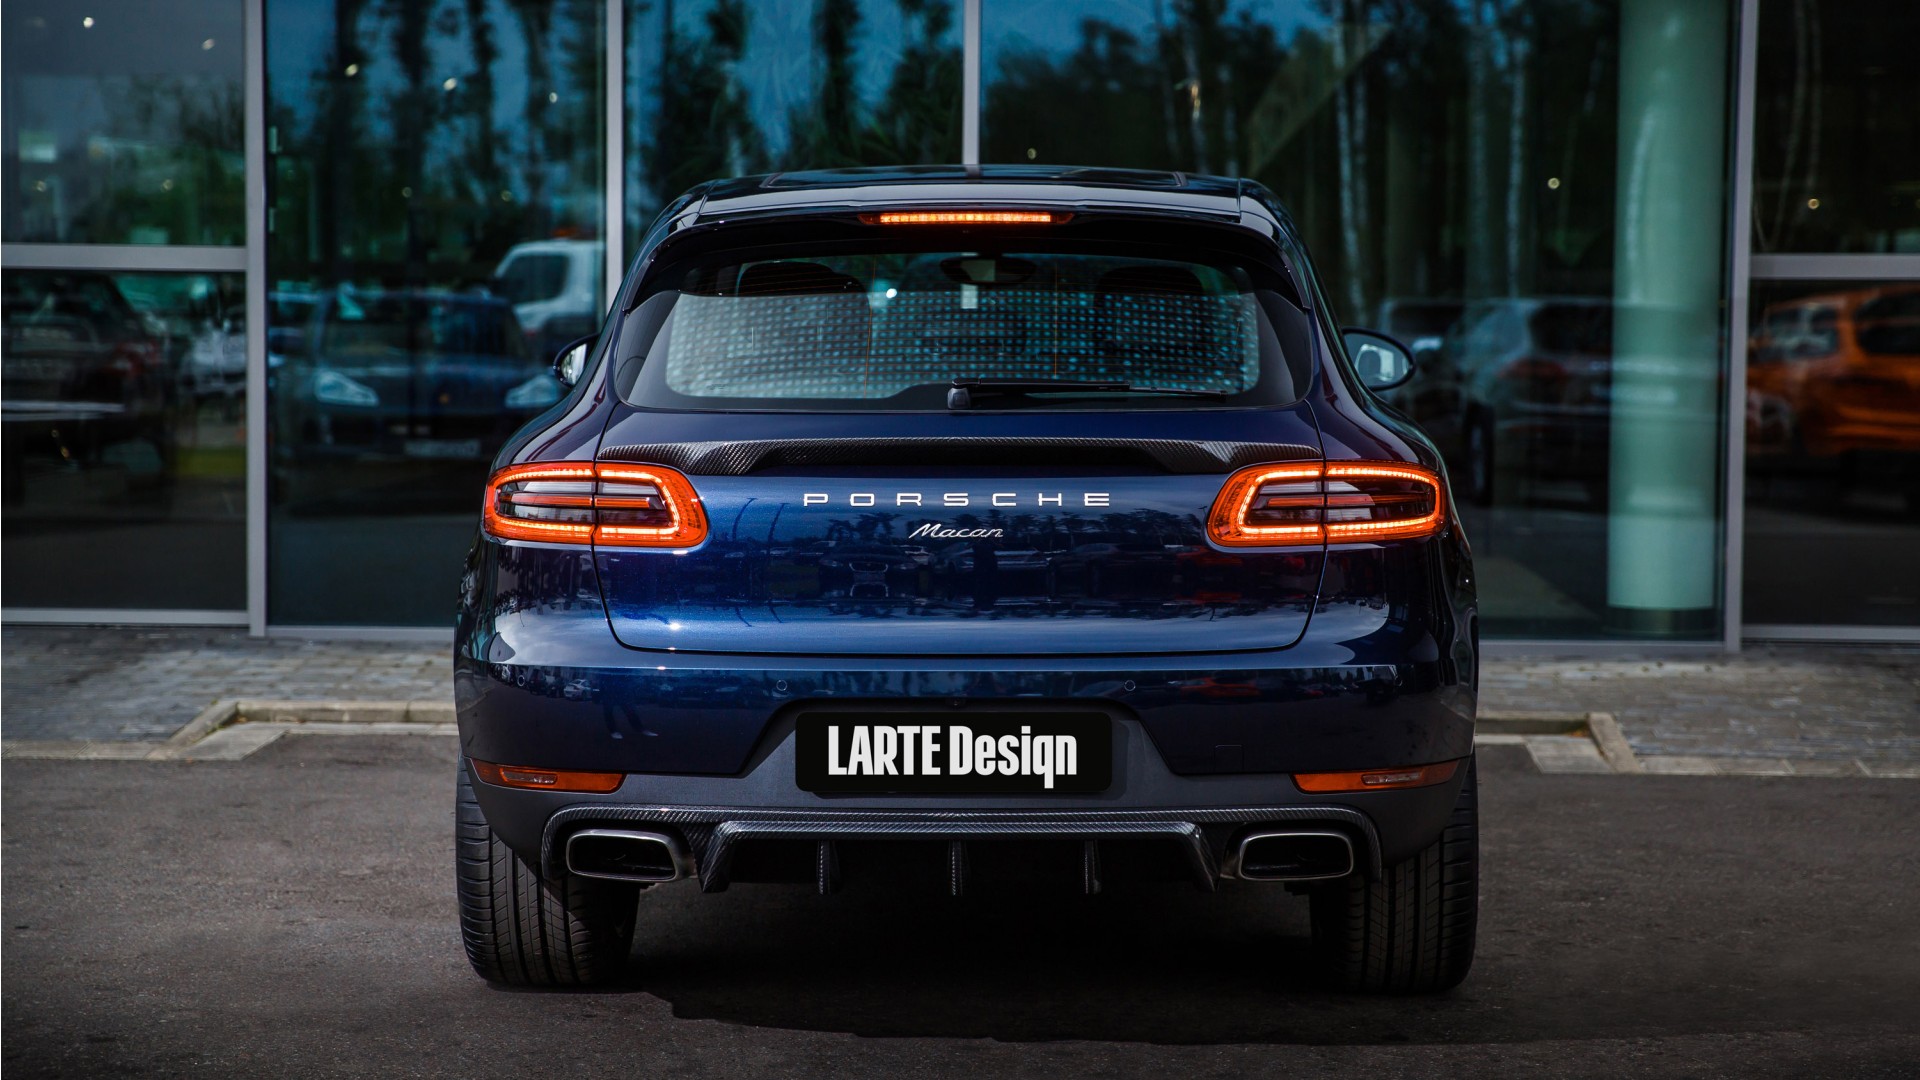 2017 Larte Design Porsche Macan 2 Wallpaper | HD Car Wallpapers | ID #8424